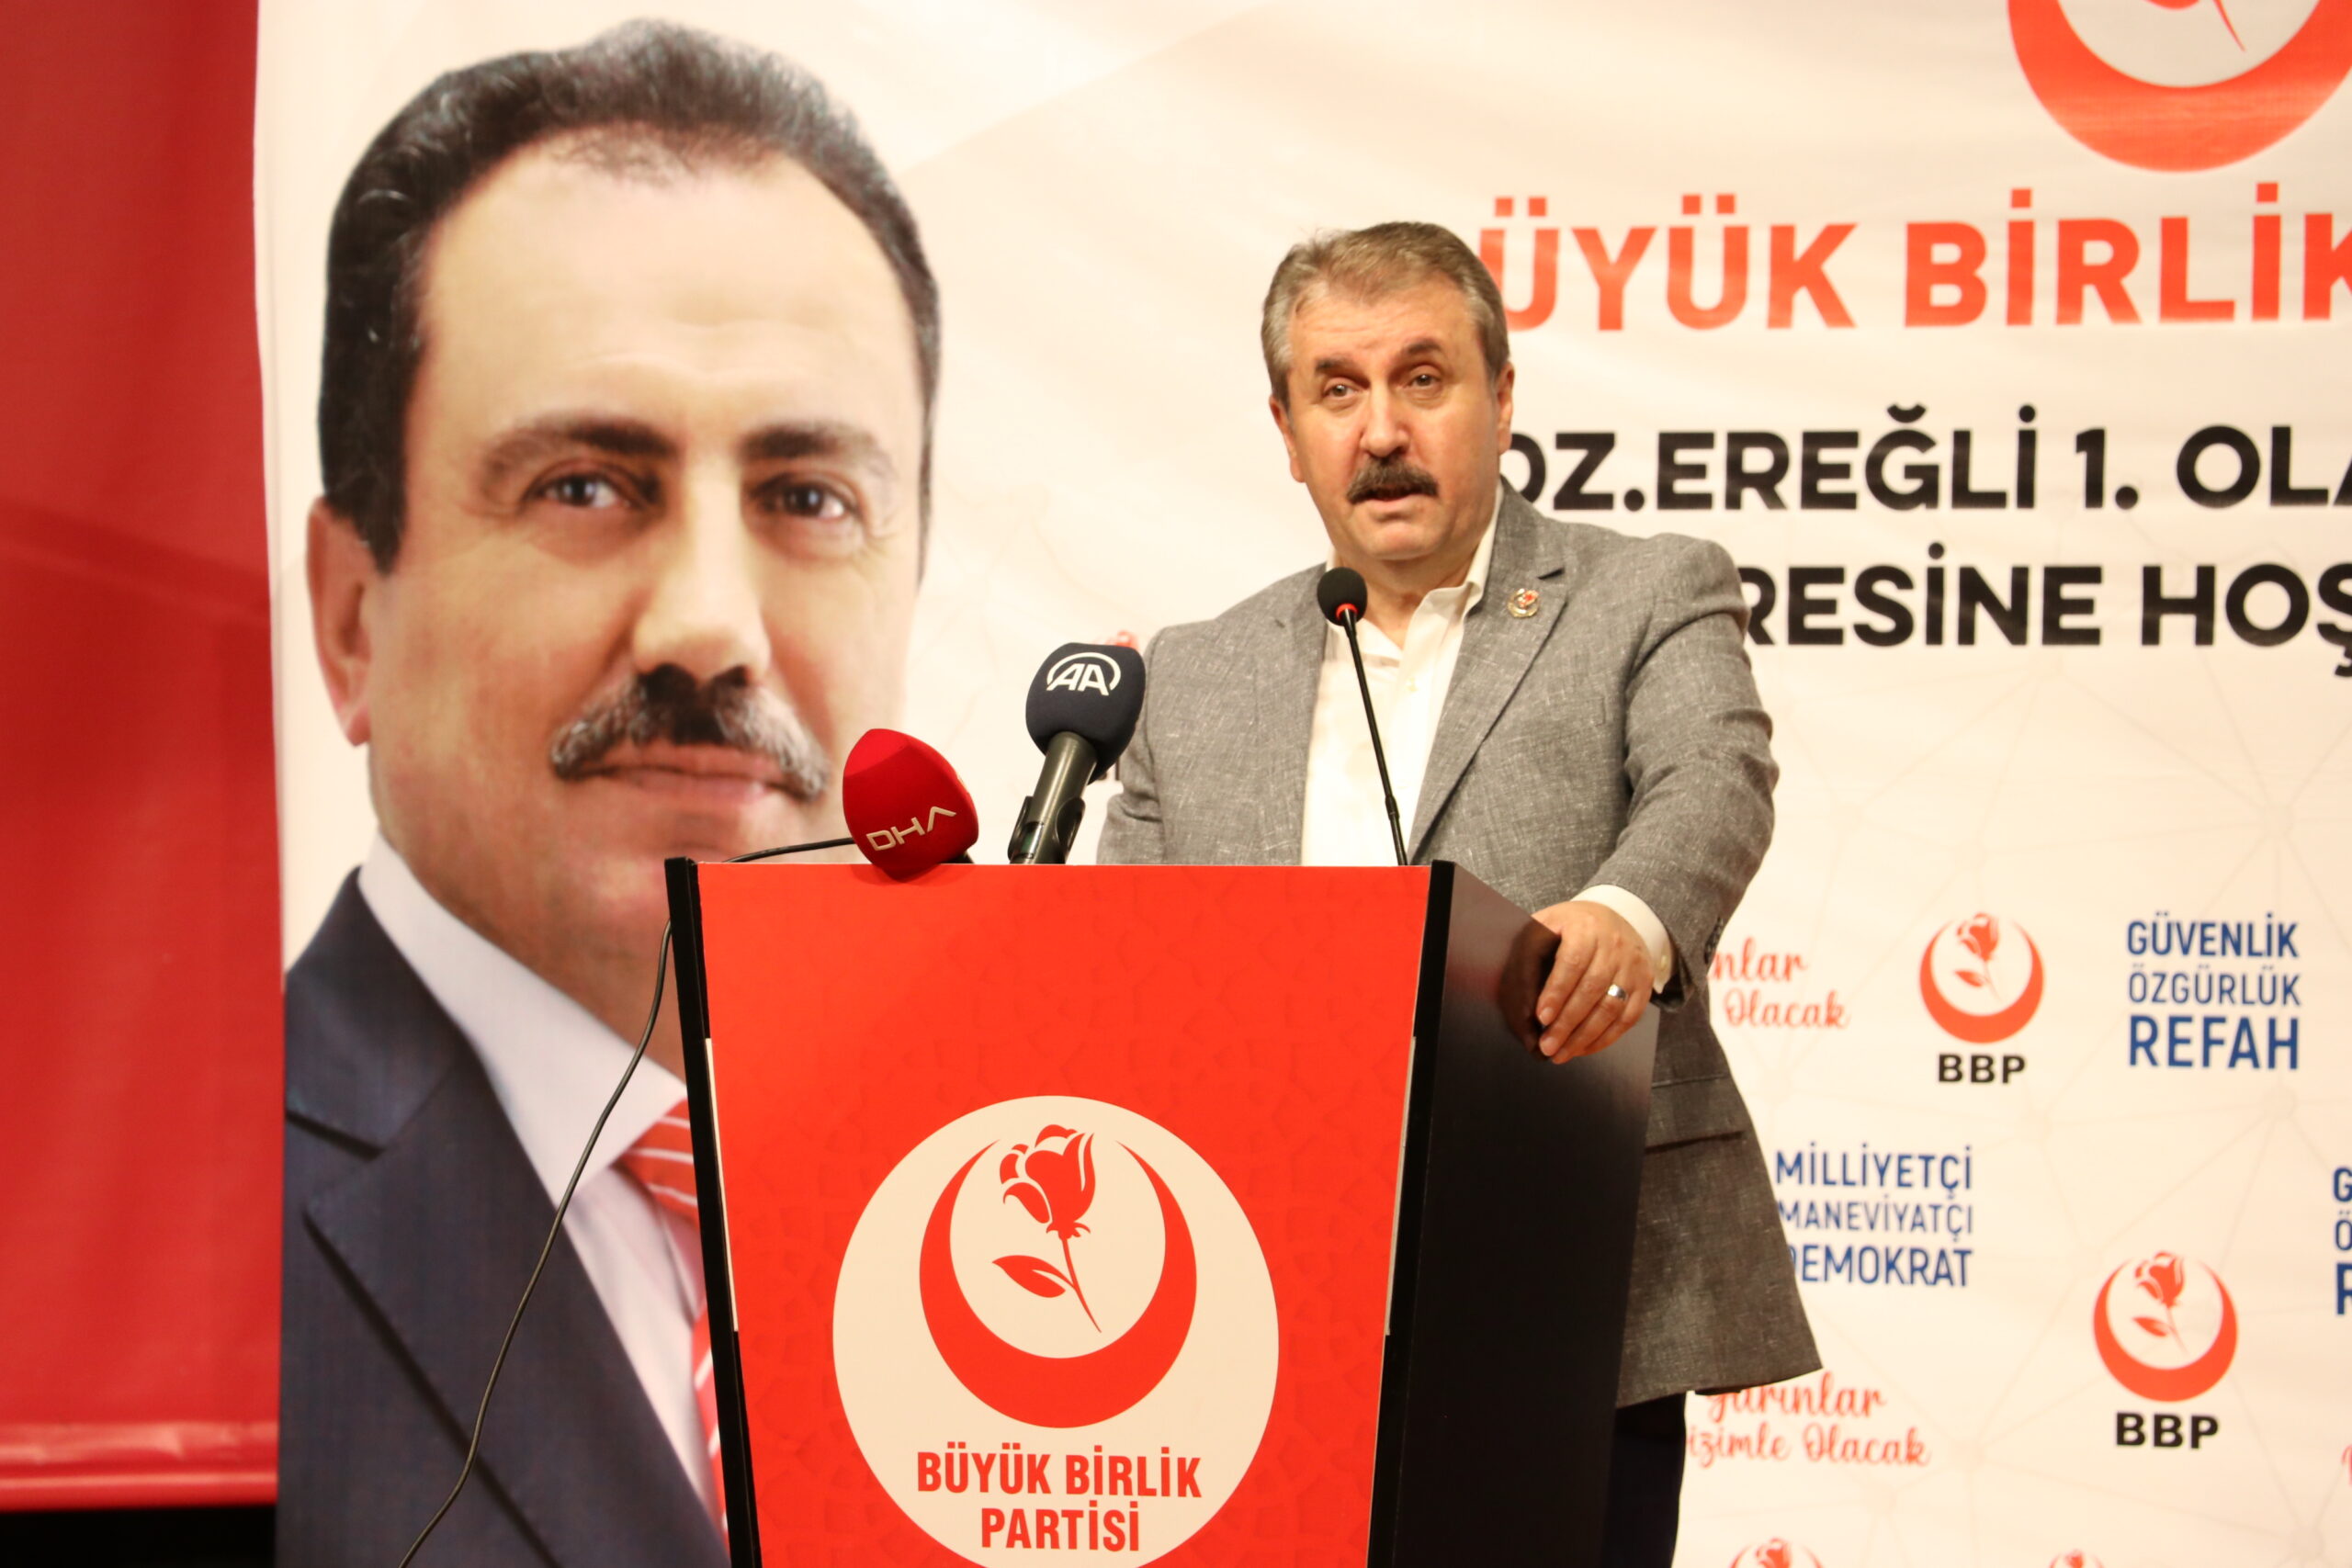 BBP Genel Başkanı Destici, partisinin Ereğli ilçe kongresinde konuştu: